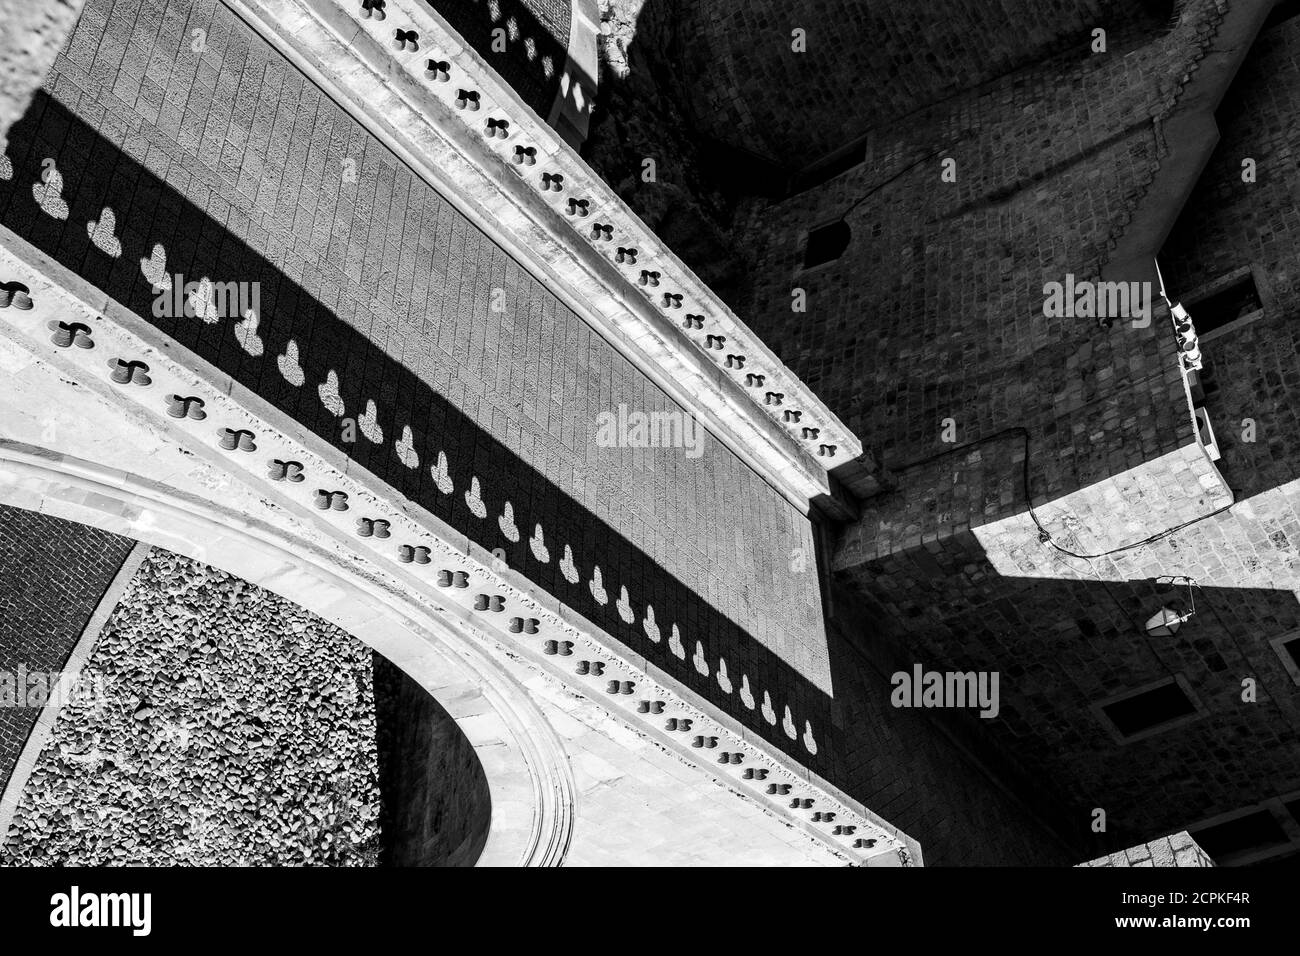 Horizon incliné, perspective abstraite noir et blanc, scène de marche de rue forteresse, pont avec ombres répétitives. Vieille ville méditerranéenne de Dubrovnik, célèbre voyage européen et destination historique, Croatie Banque D'Images